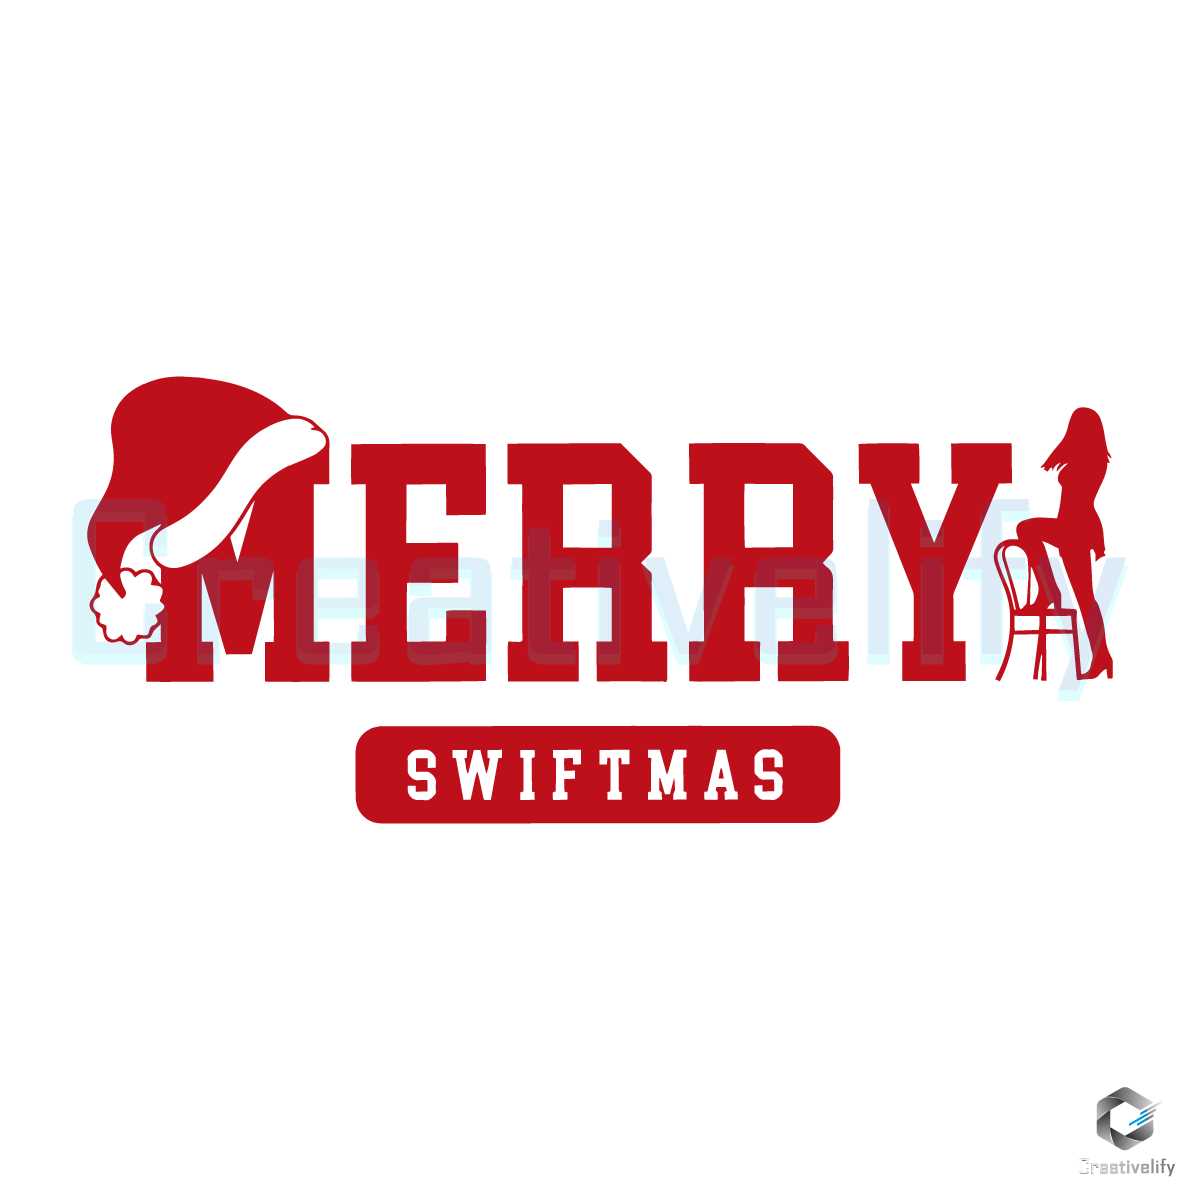 Merry Swiftmas! @taylorswift #taylorswift #bourbon #whiskey